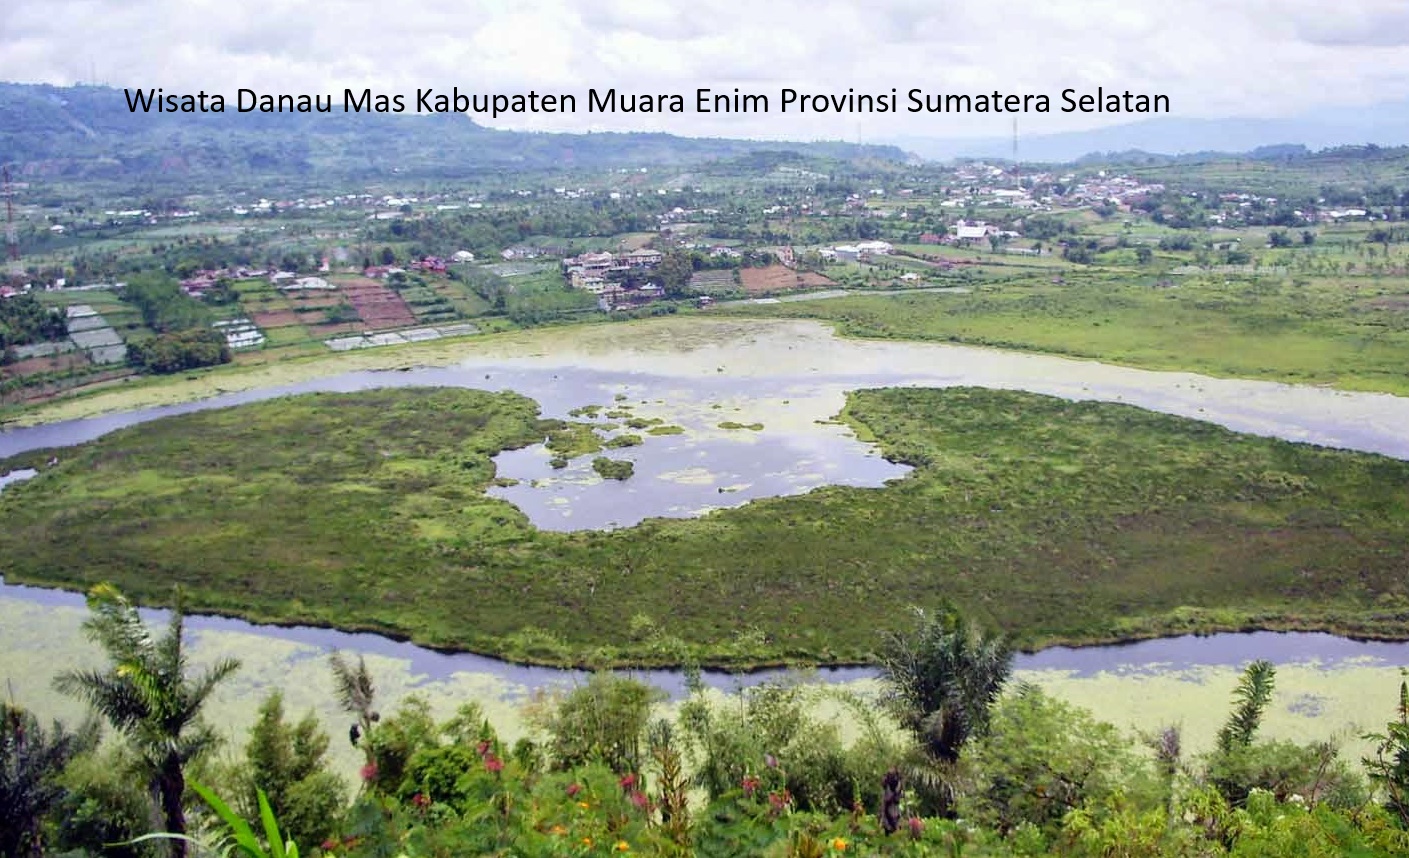 Desa Wisata Danau Mas: Menggairahkan Perekonomian dan Pariwisata di Kabupaten Muara Enim